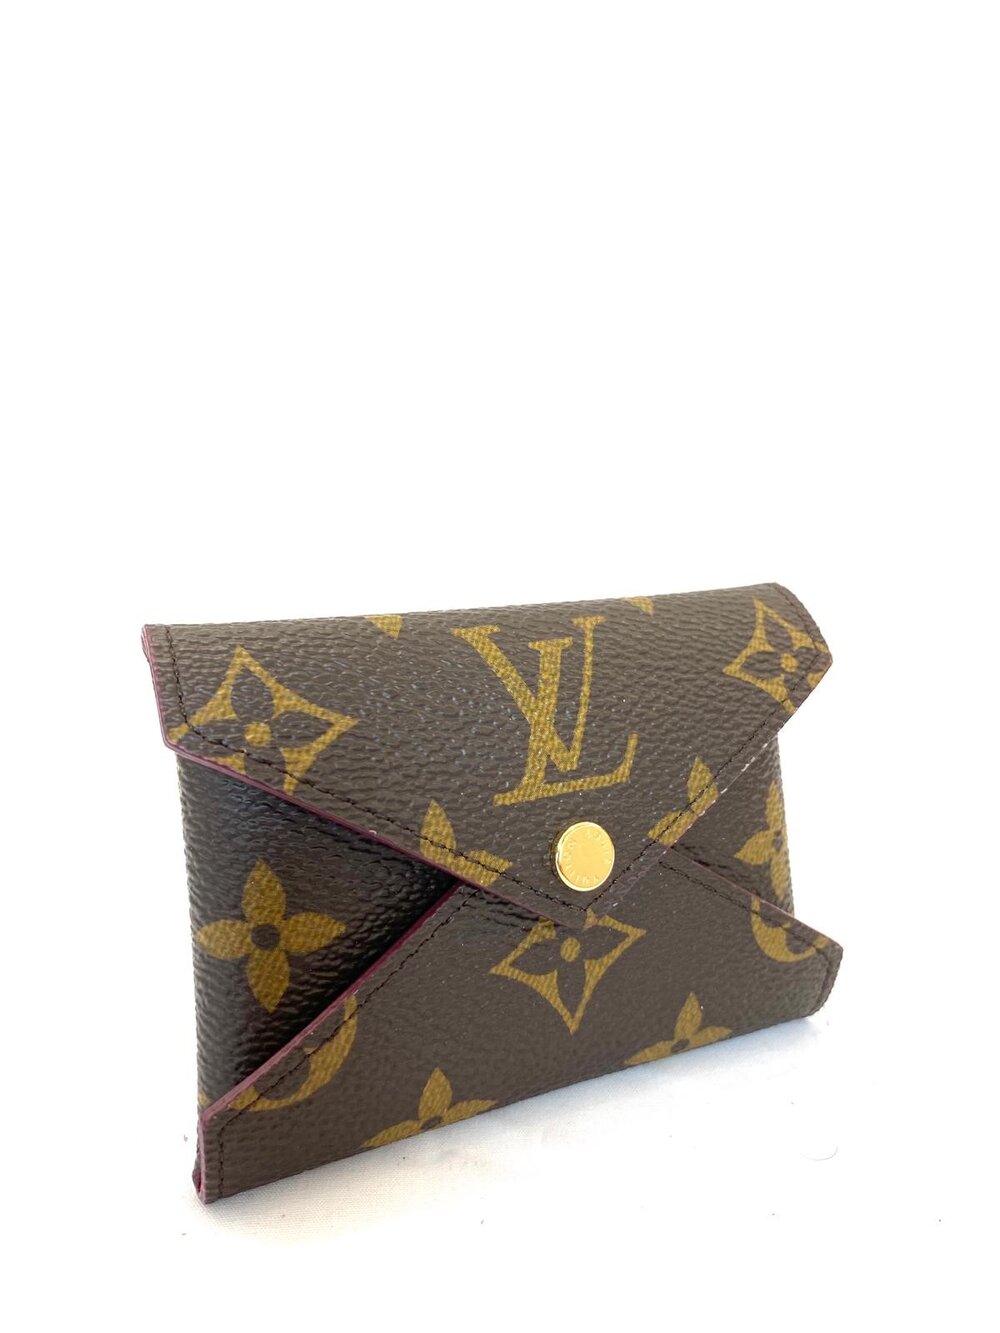 Louis Vuitton Monogram Kirigami Pochette (Small) — Luxe & Beyond